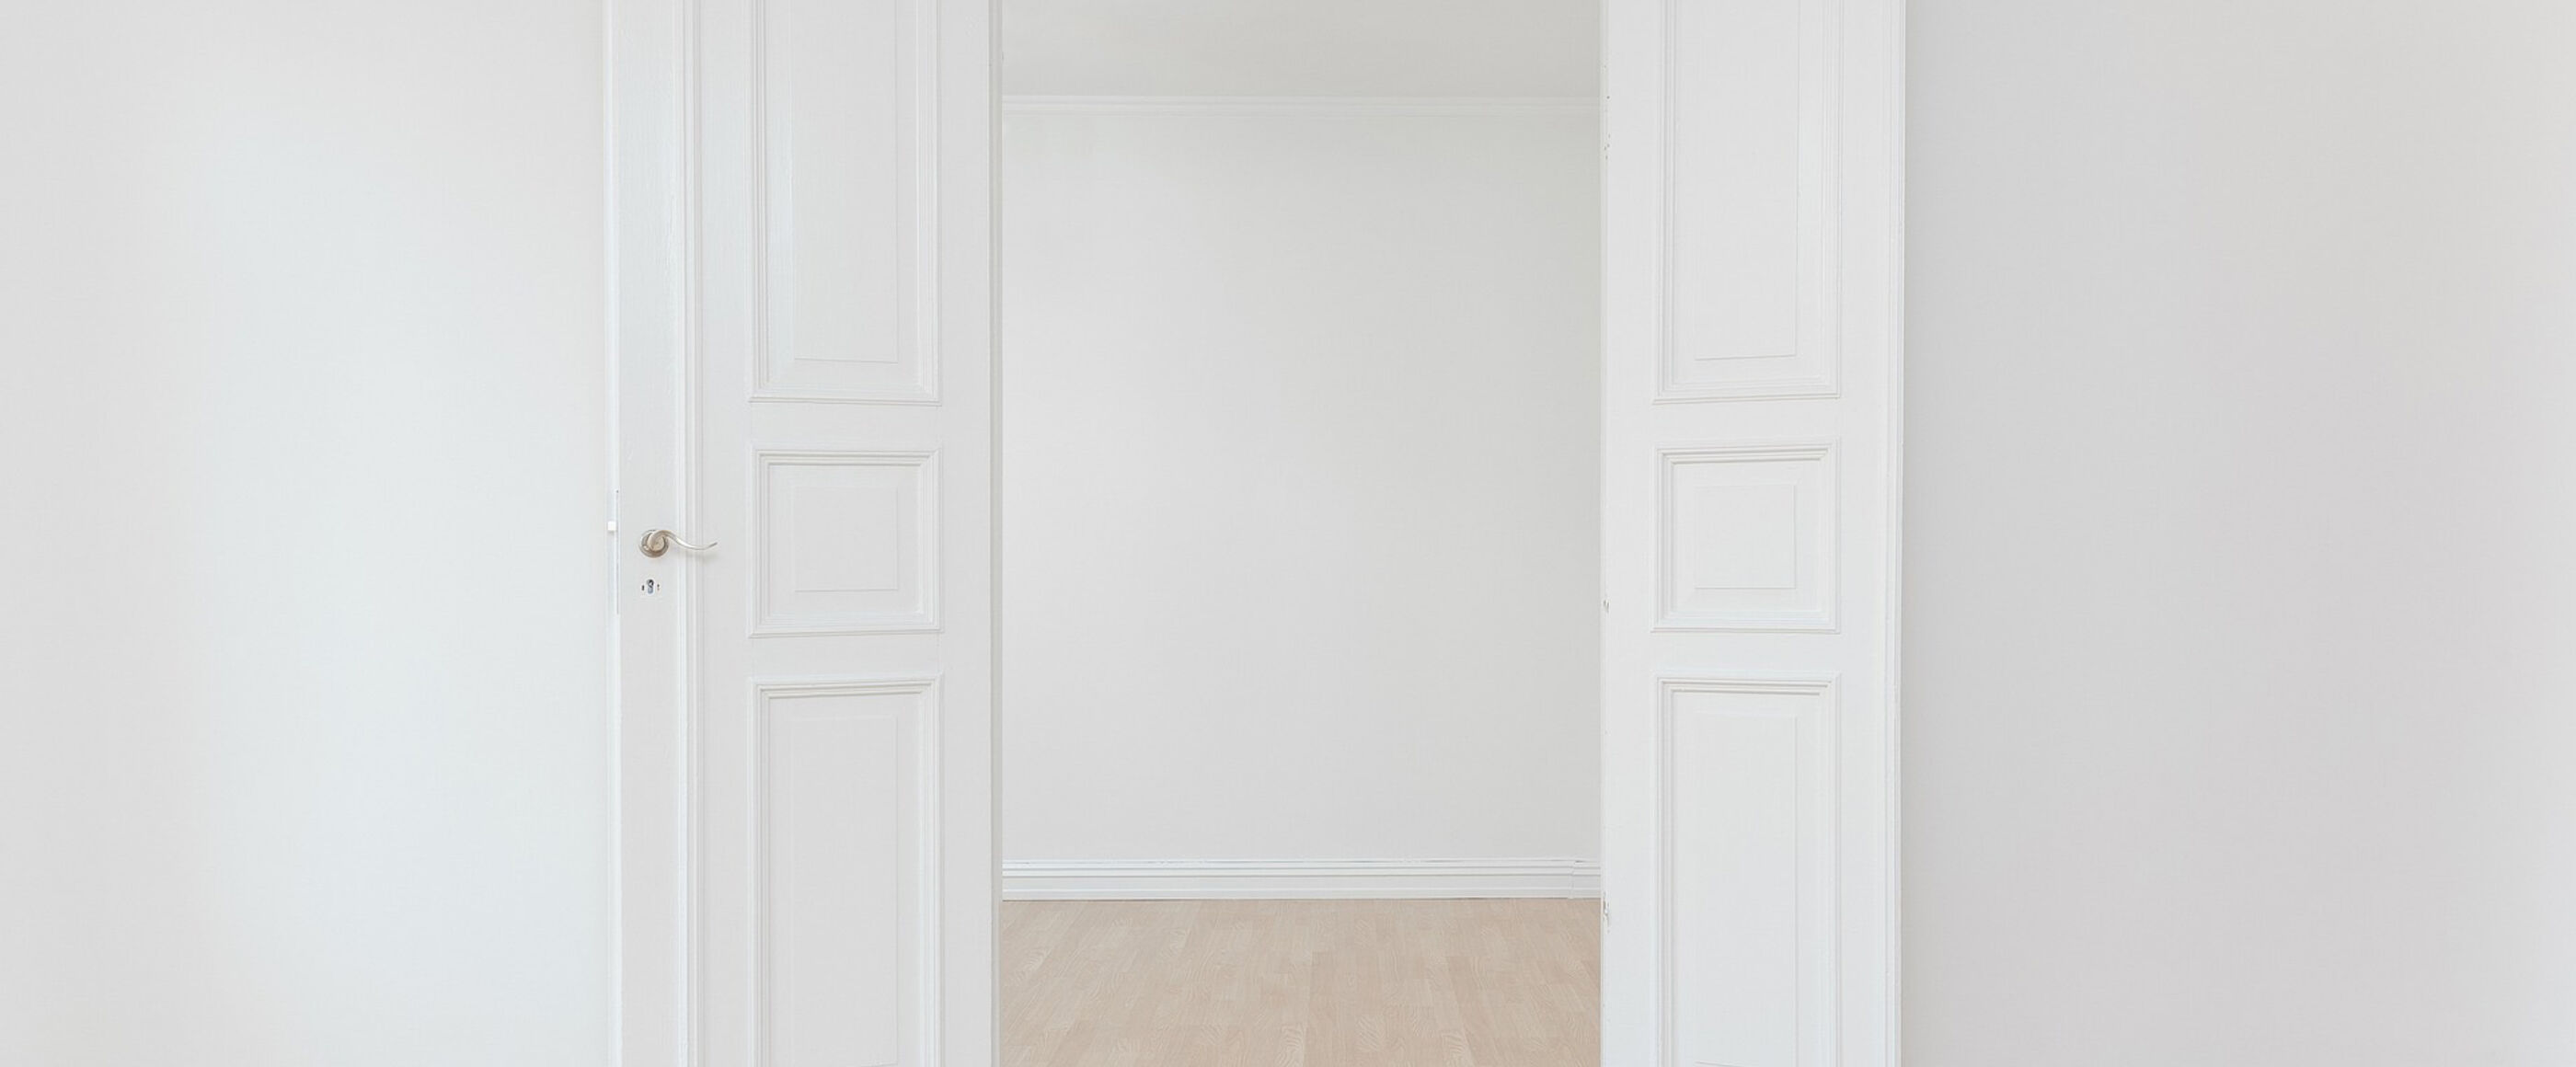 Eine offene weiße Tür.